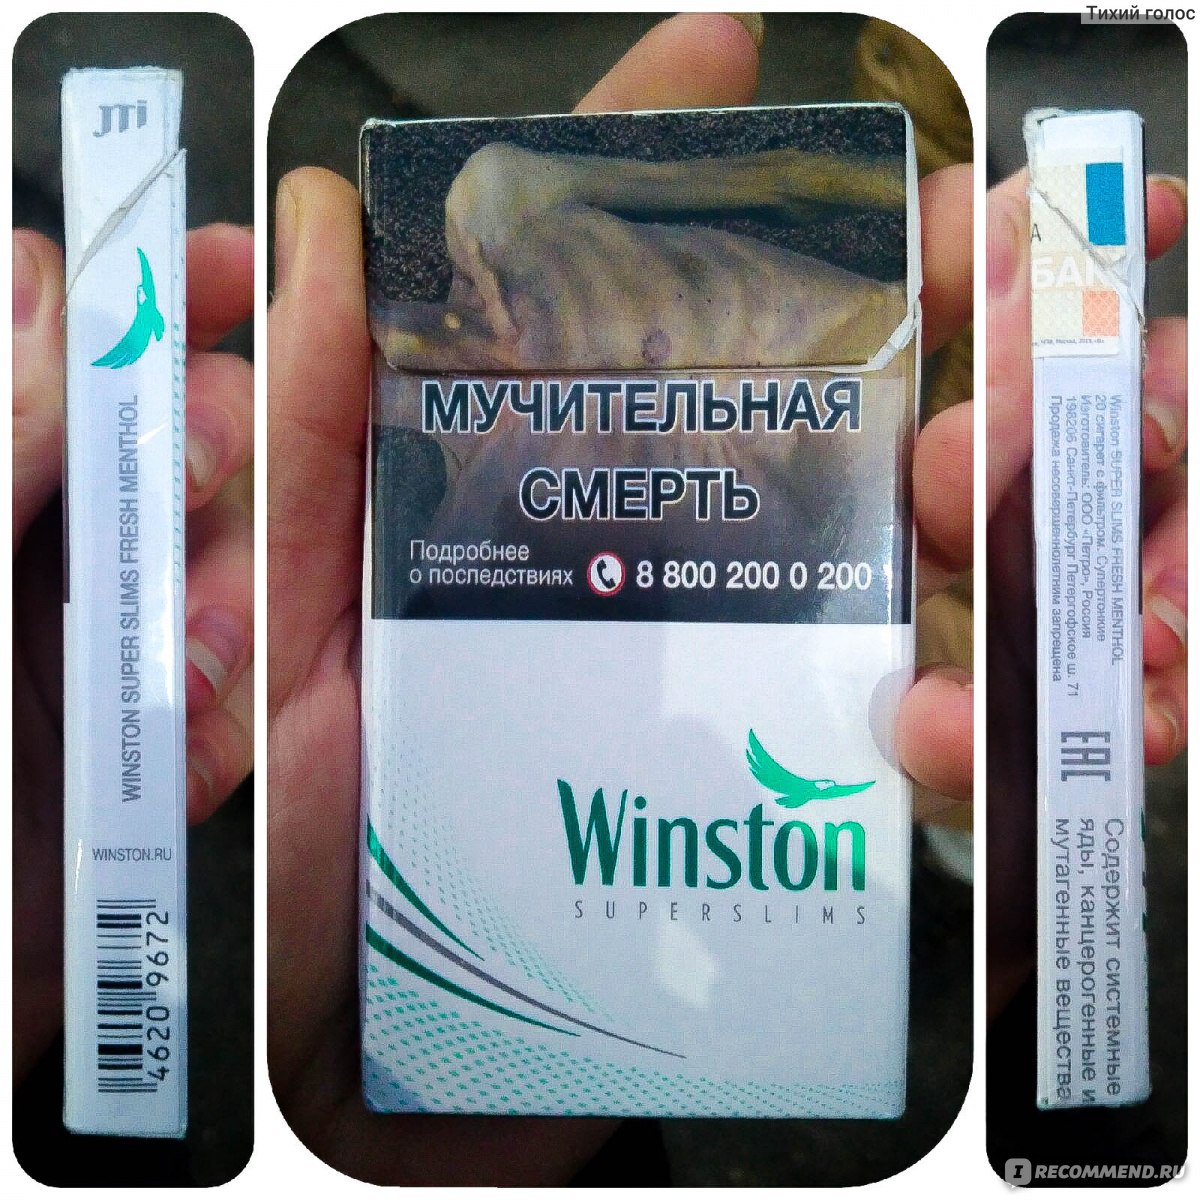 Винстон лаунж сигареты